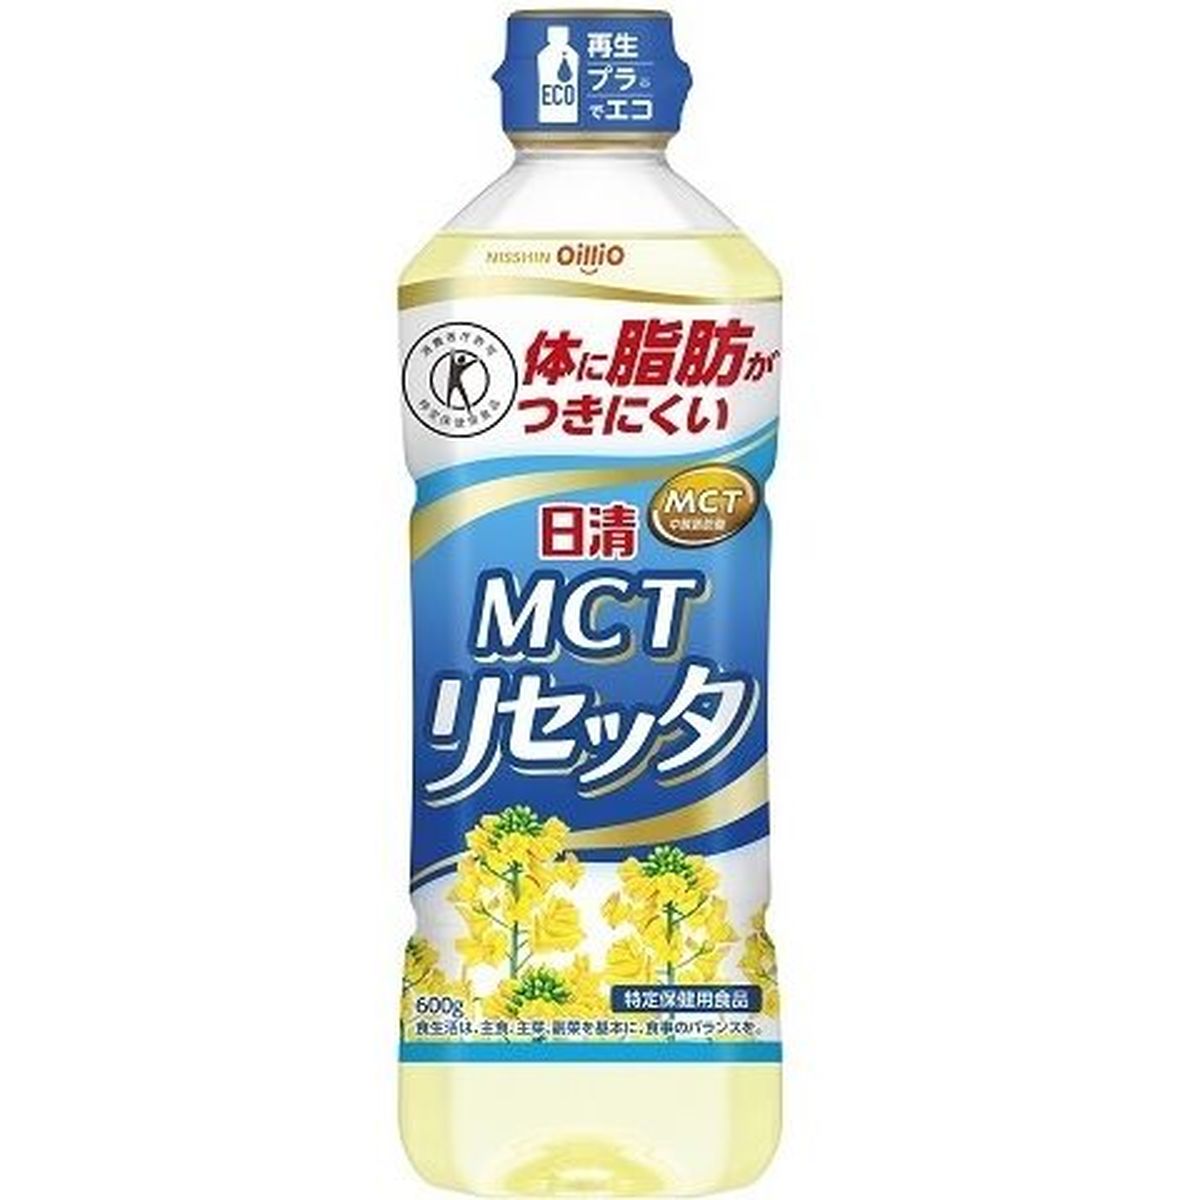 【10個入リ】日清オイリオ MCTリセッタ ペット 600g